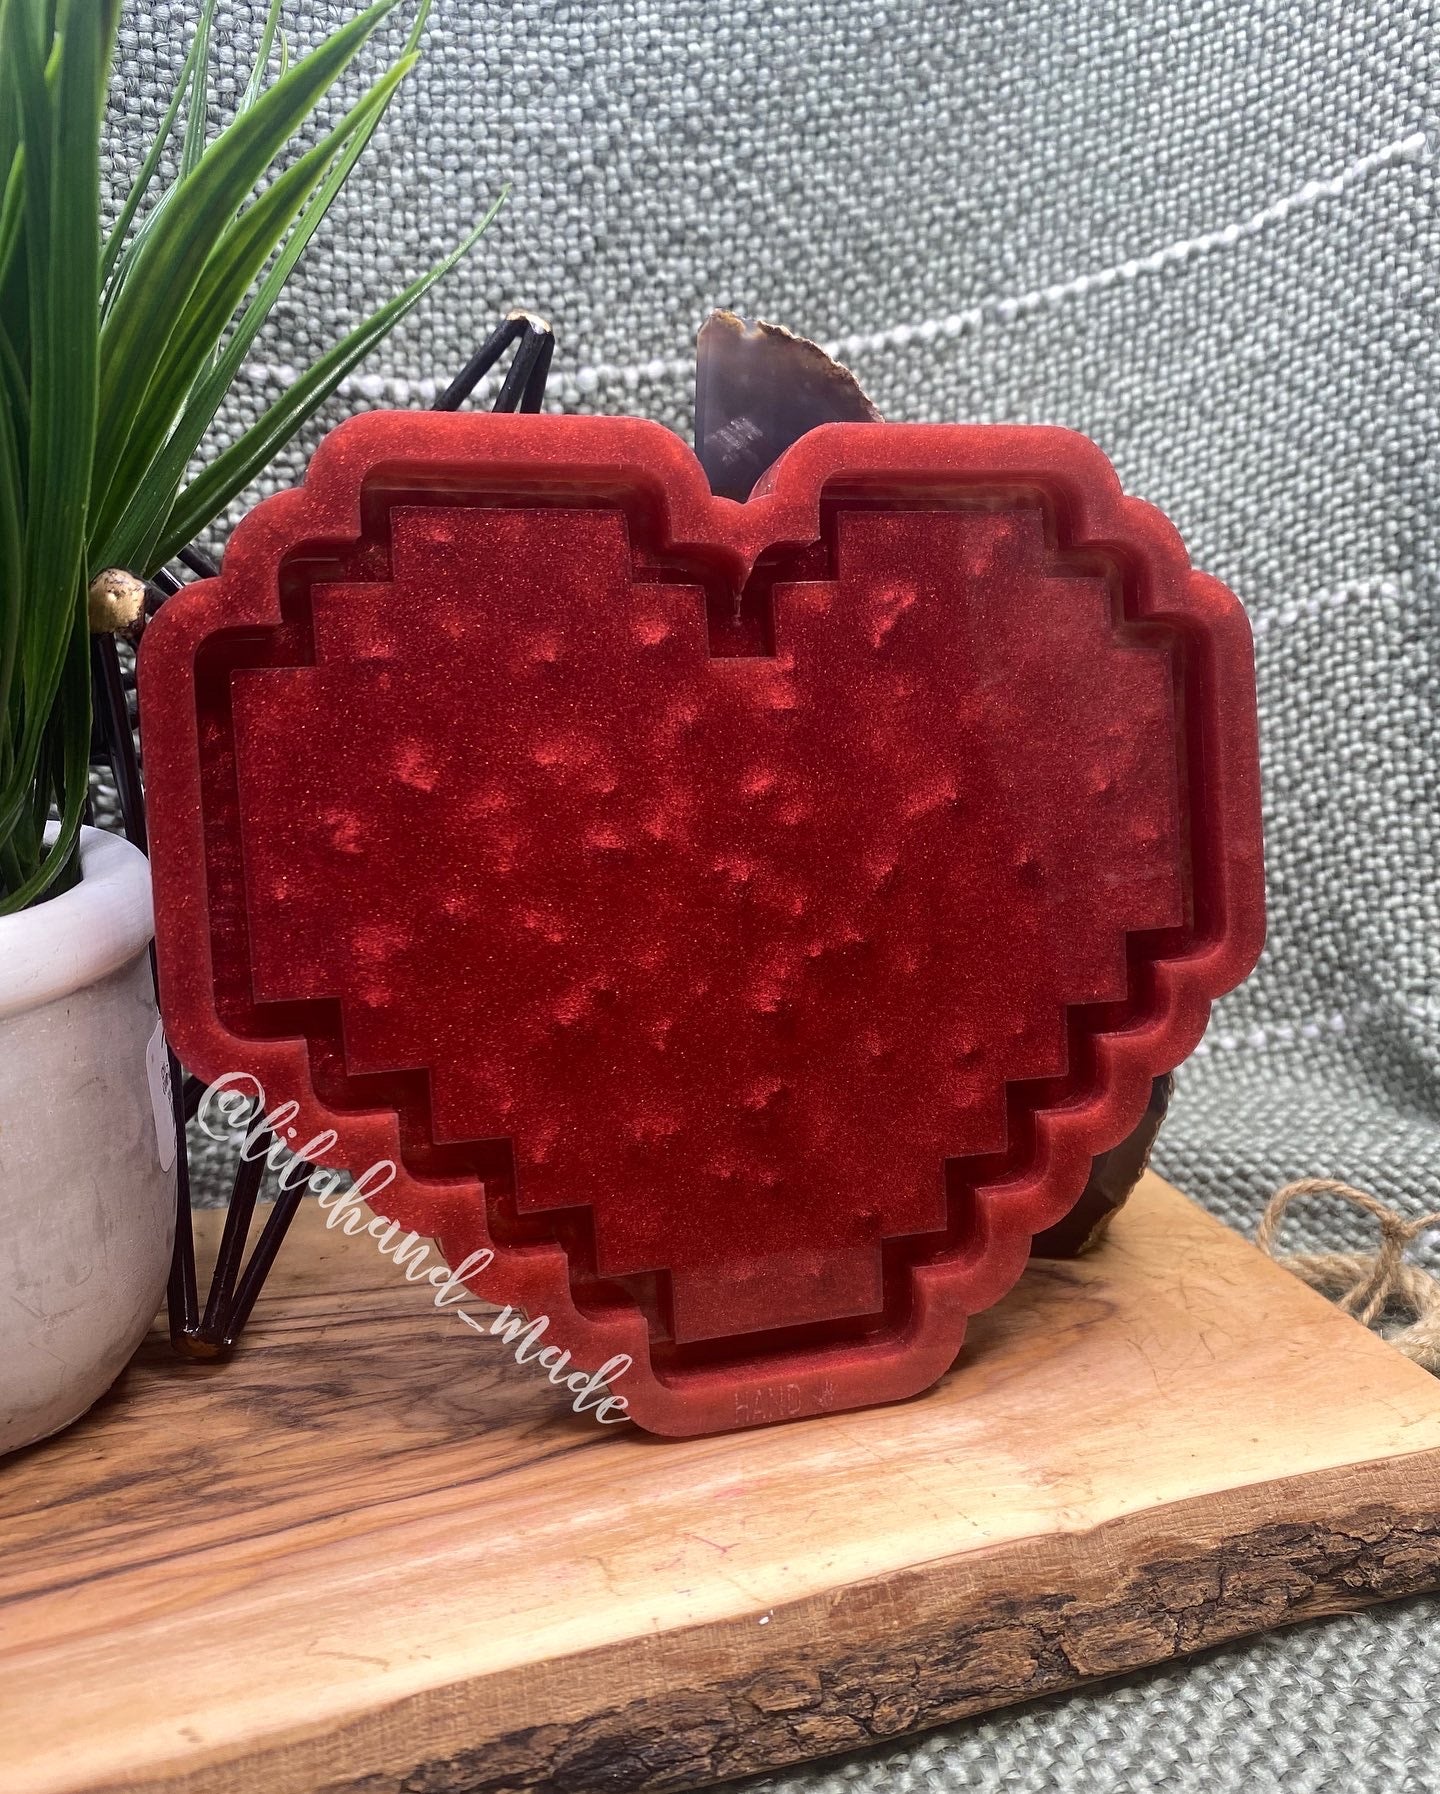 8 bit heart tray mold